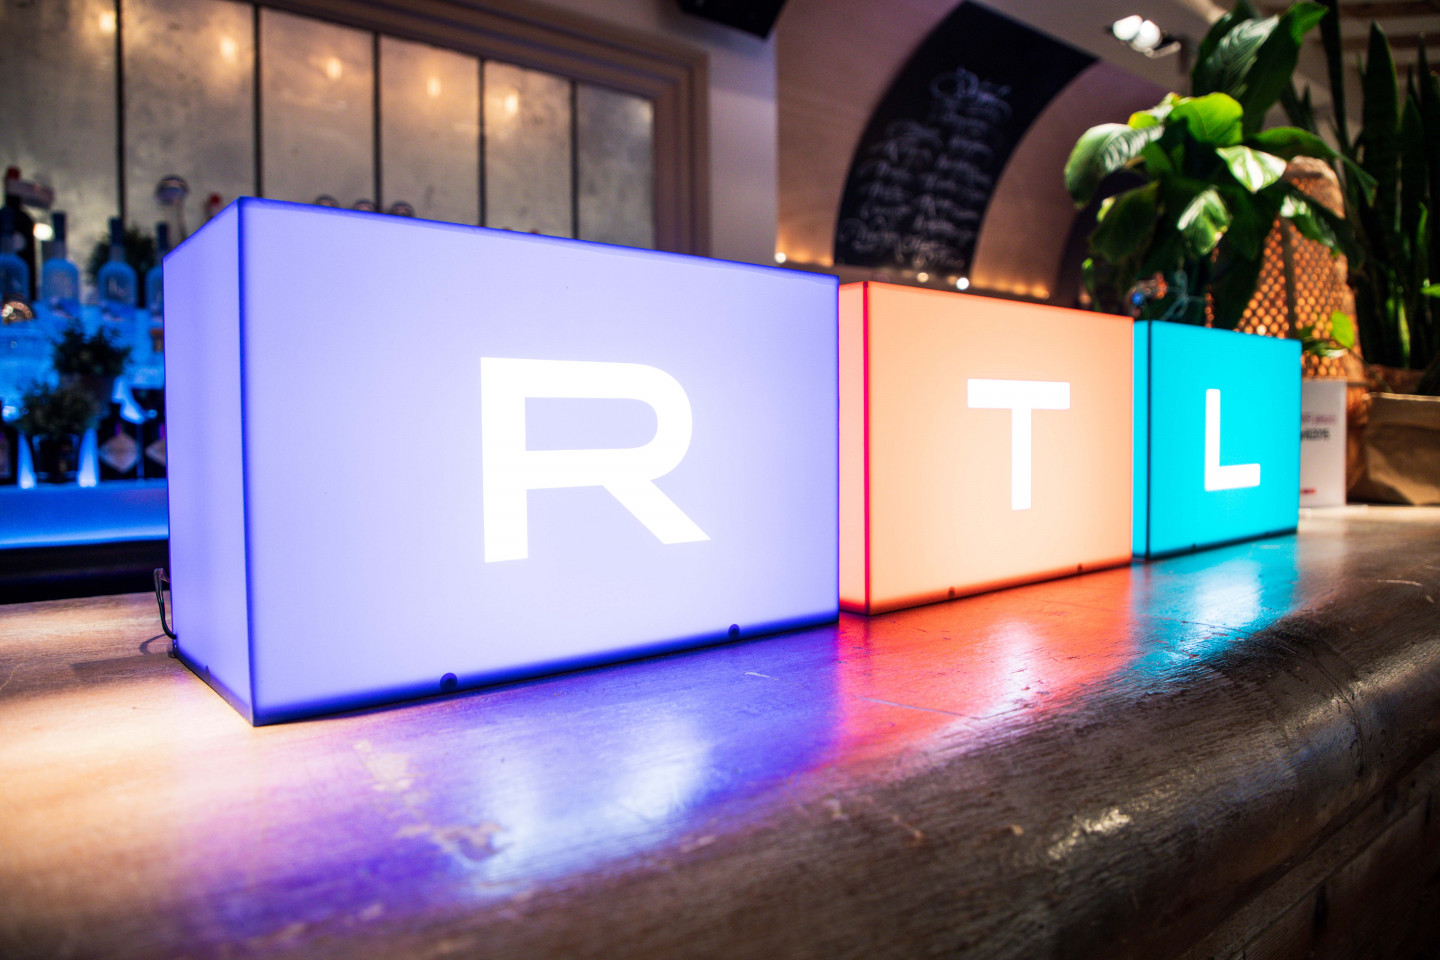 Váratlan változás az RTL-nél: átigazolt a TV2 egyik húzóneve, ismert műsorvezető szerződött át